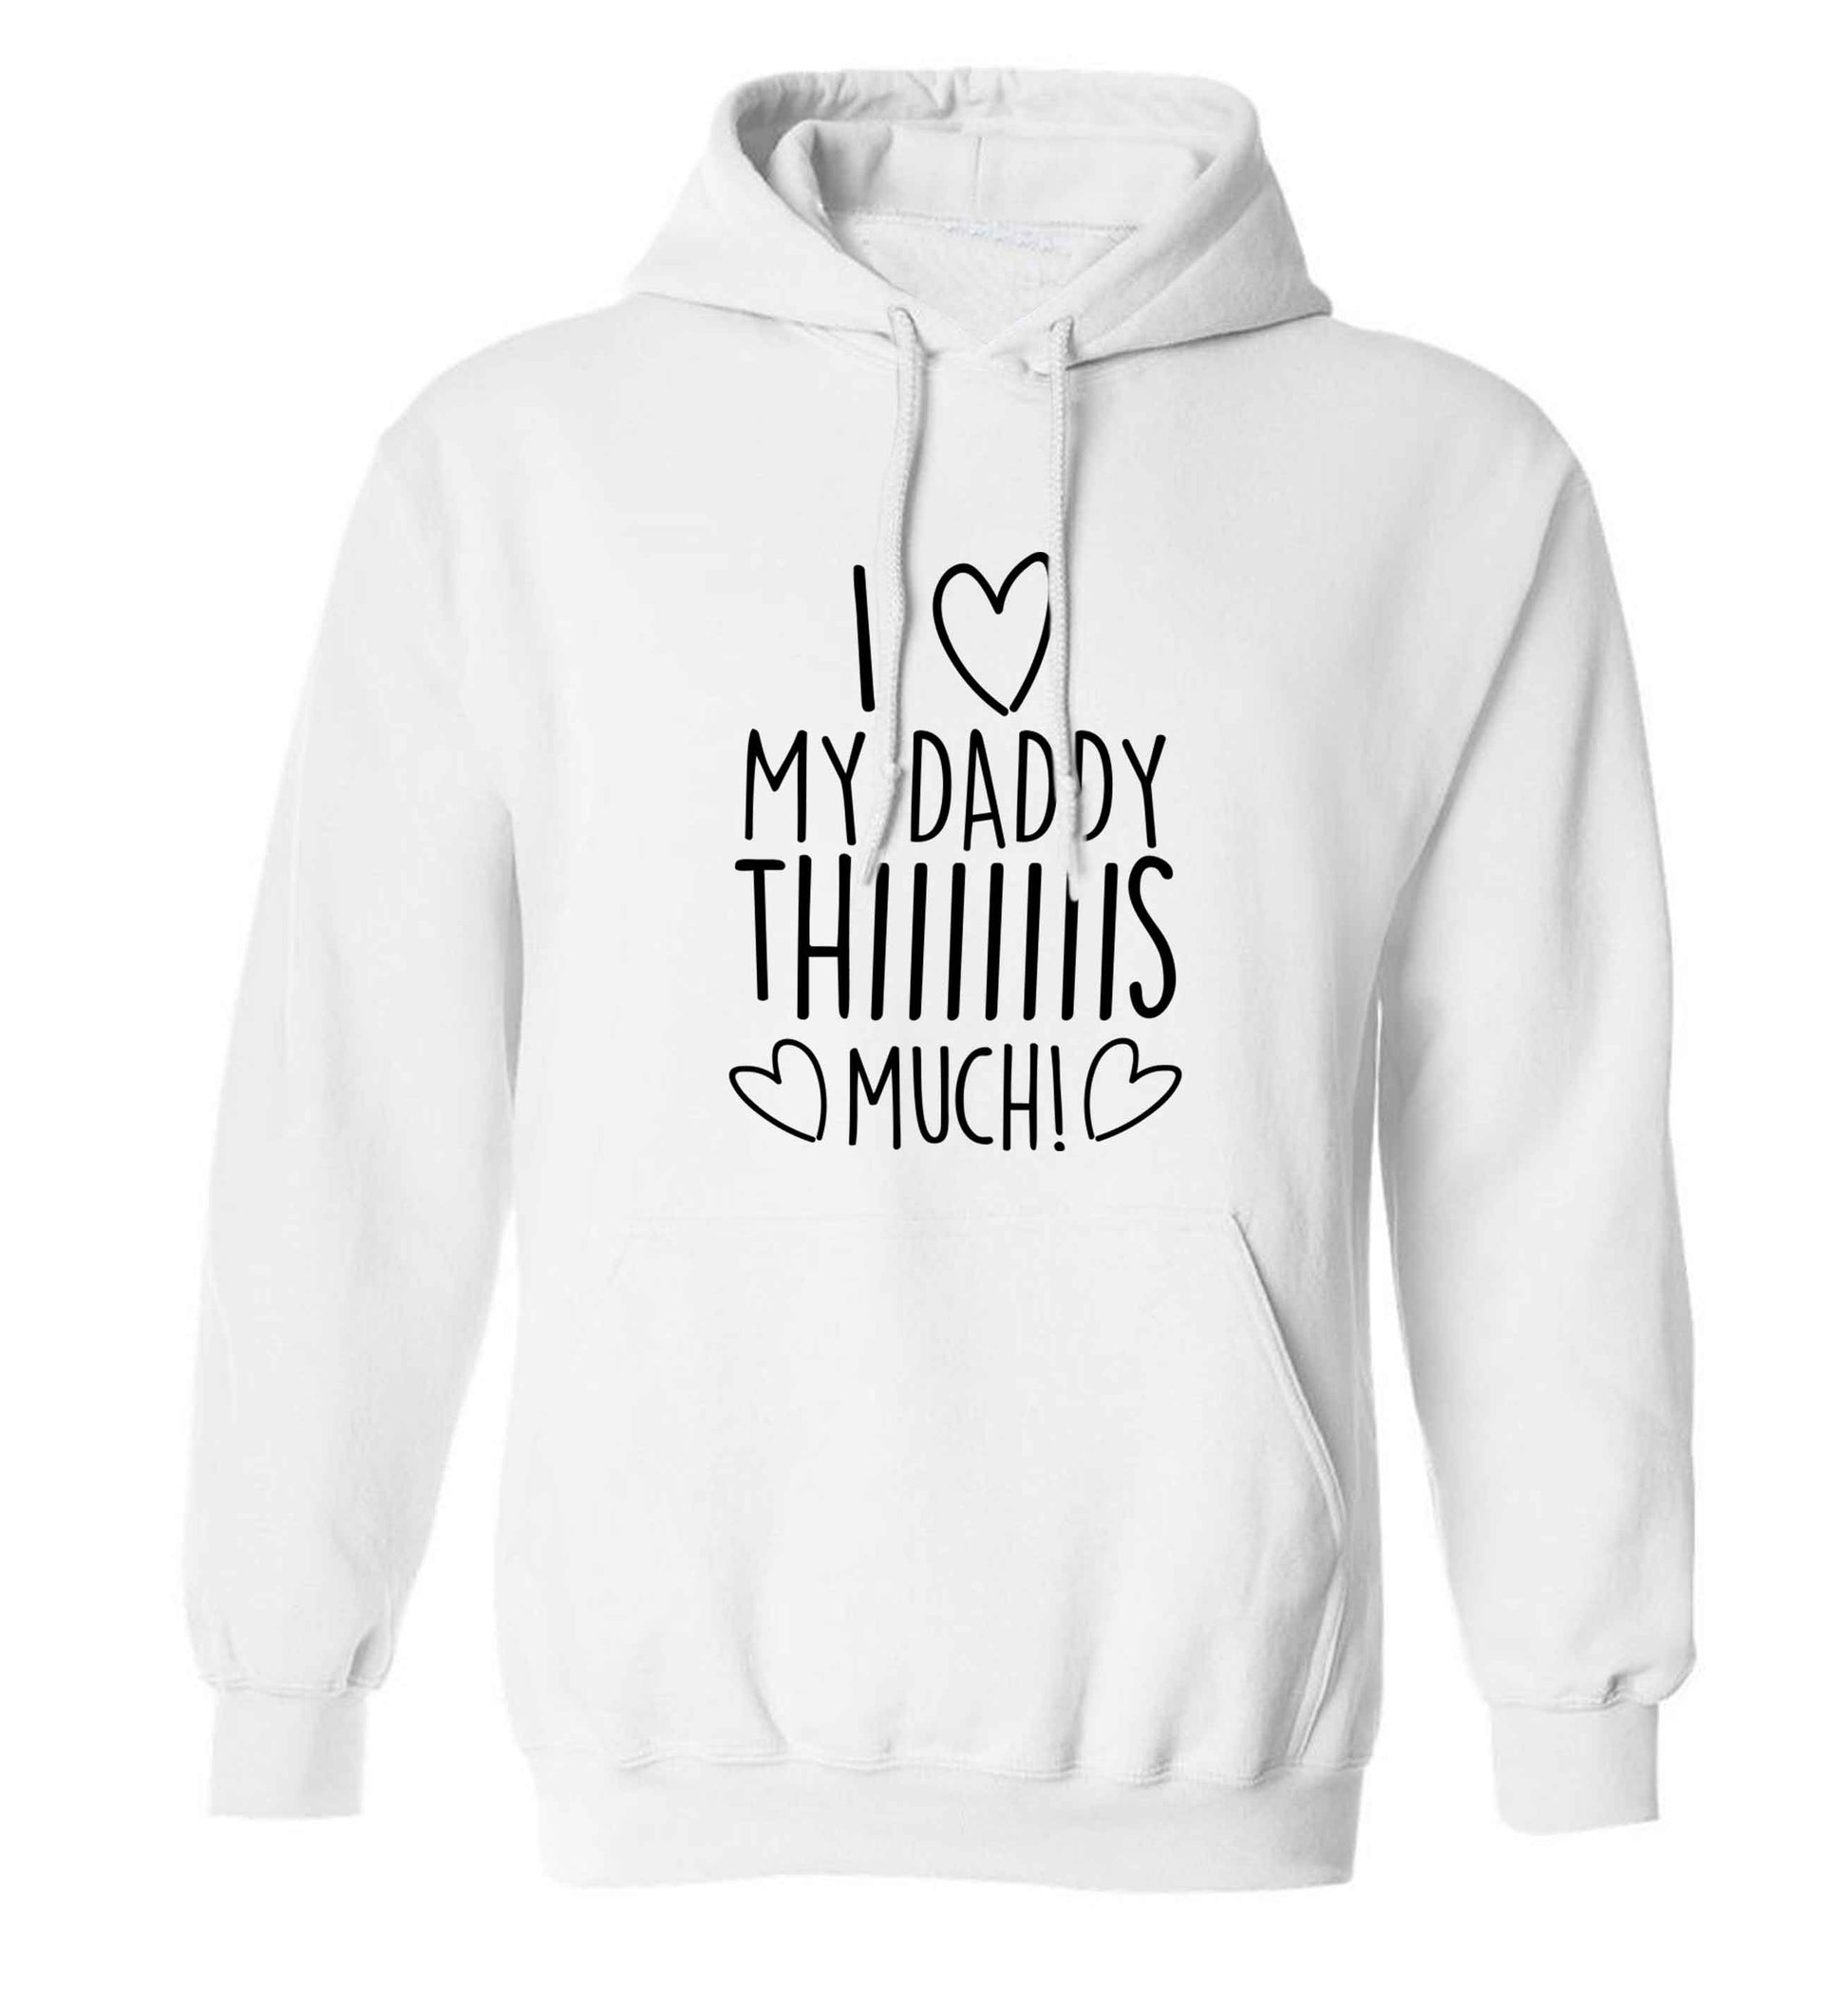 I love my daddy thiiiiis much! adults unisex white hoodie 2XL